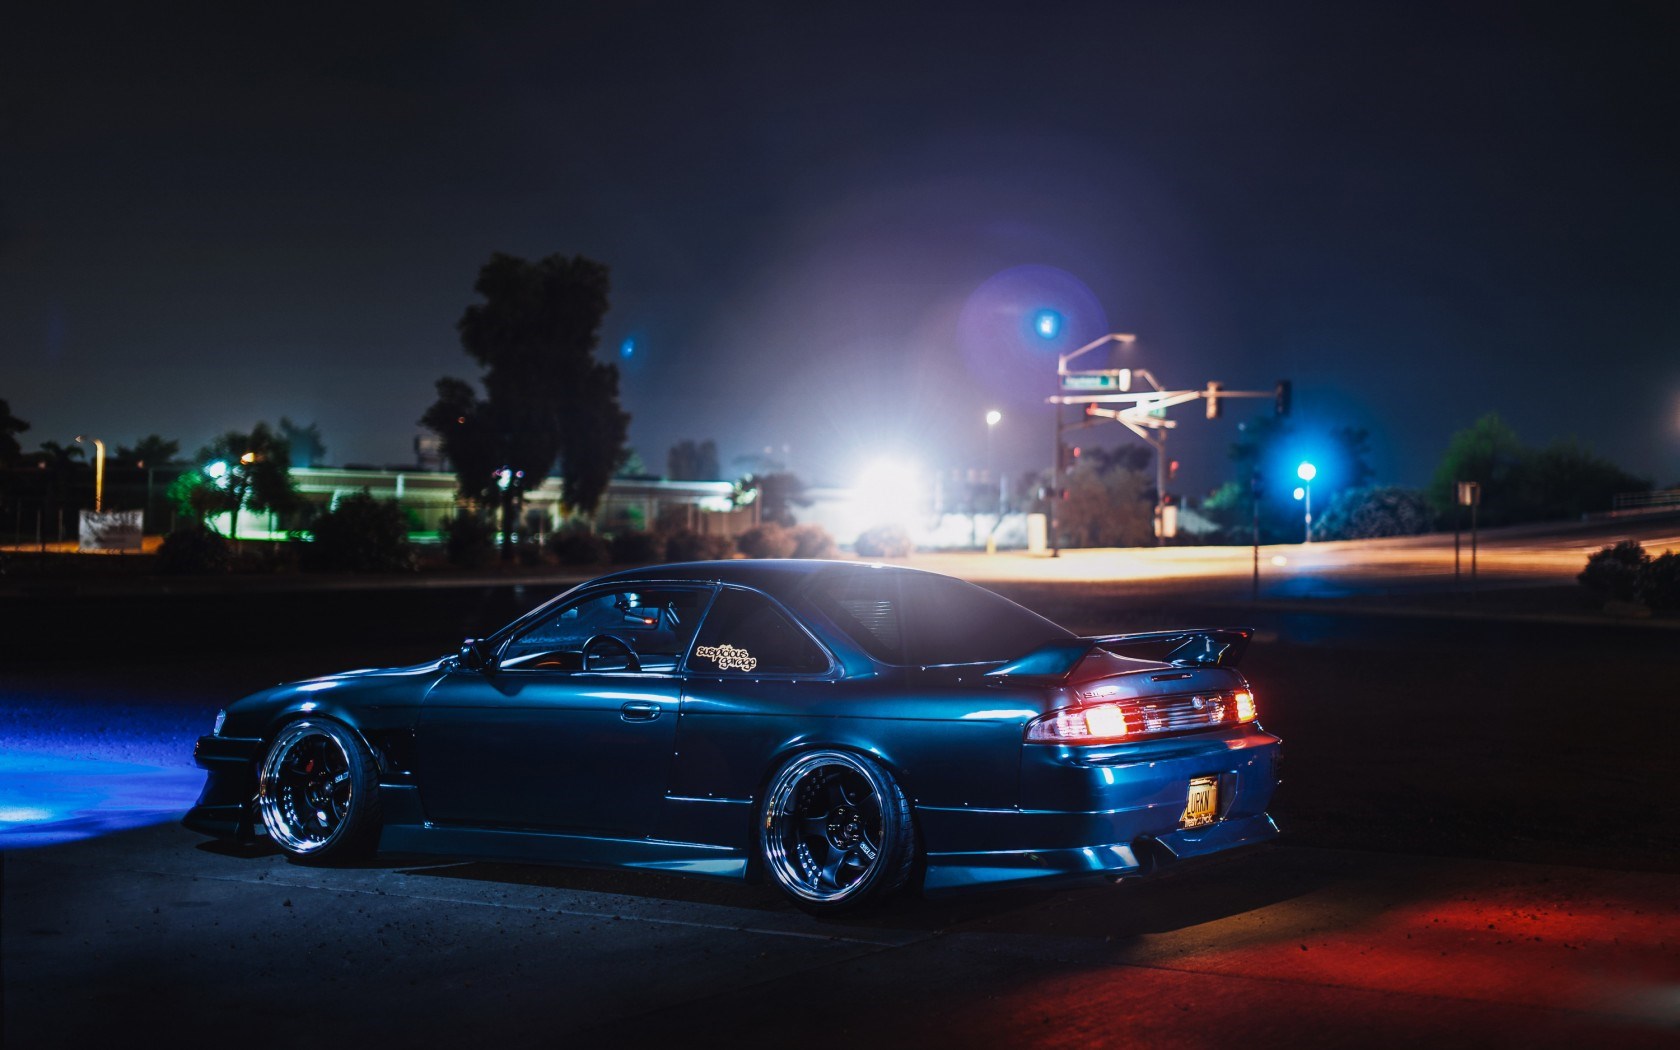  HD Hintergrundbilder Nissan Silvia S14 240sx Auto Tuning Nacht